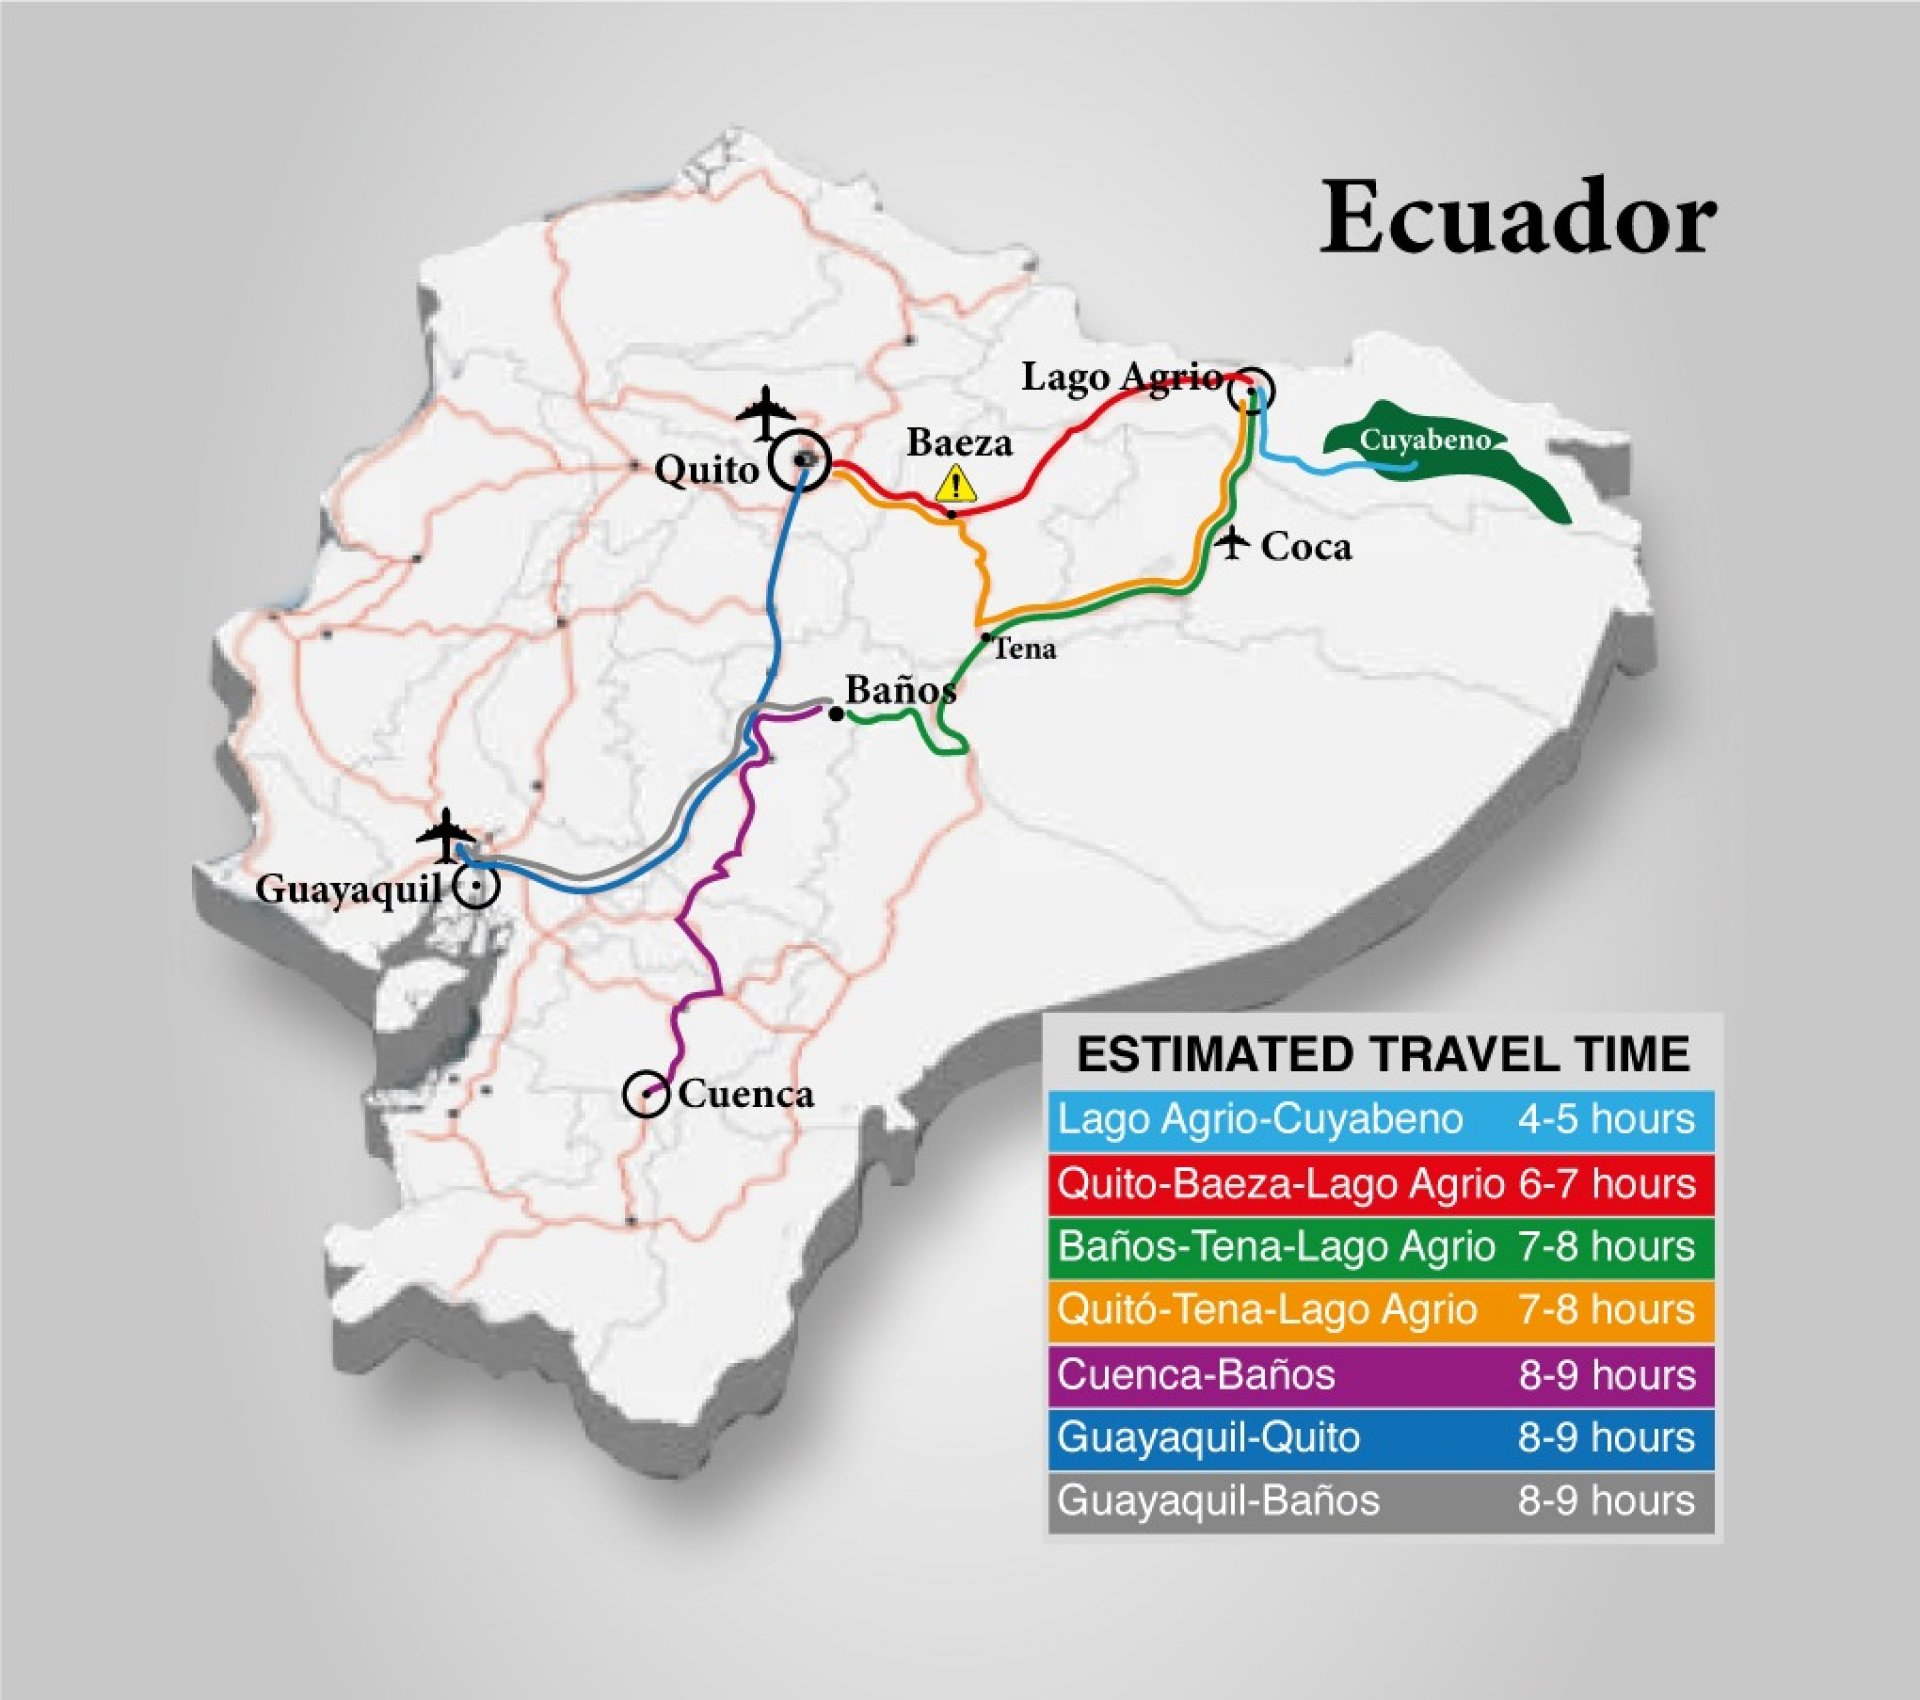 ¿Cómo llegar a Lago Agrio (Cuyabeno) desde Guayaquil?